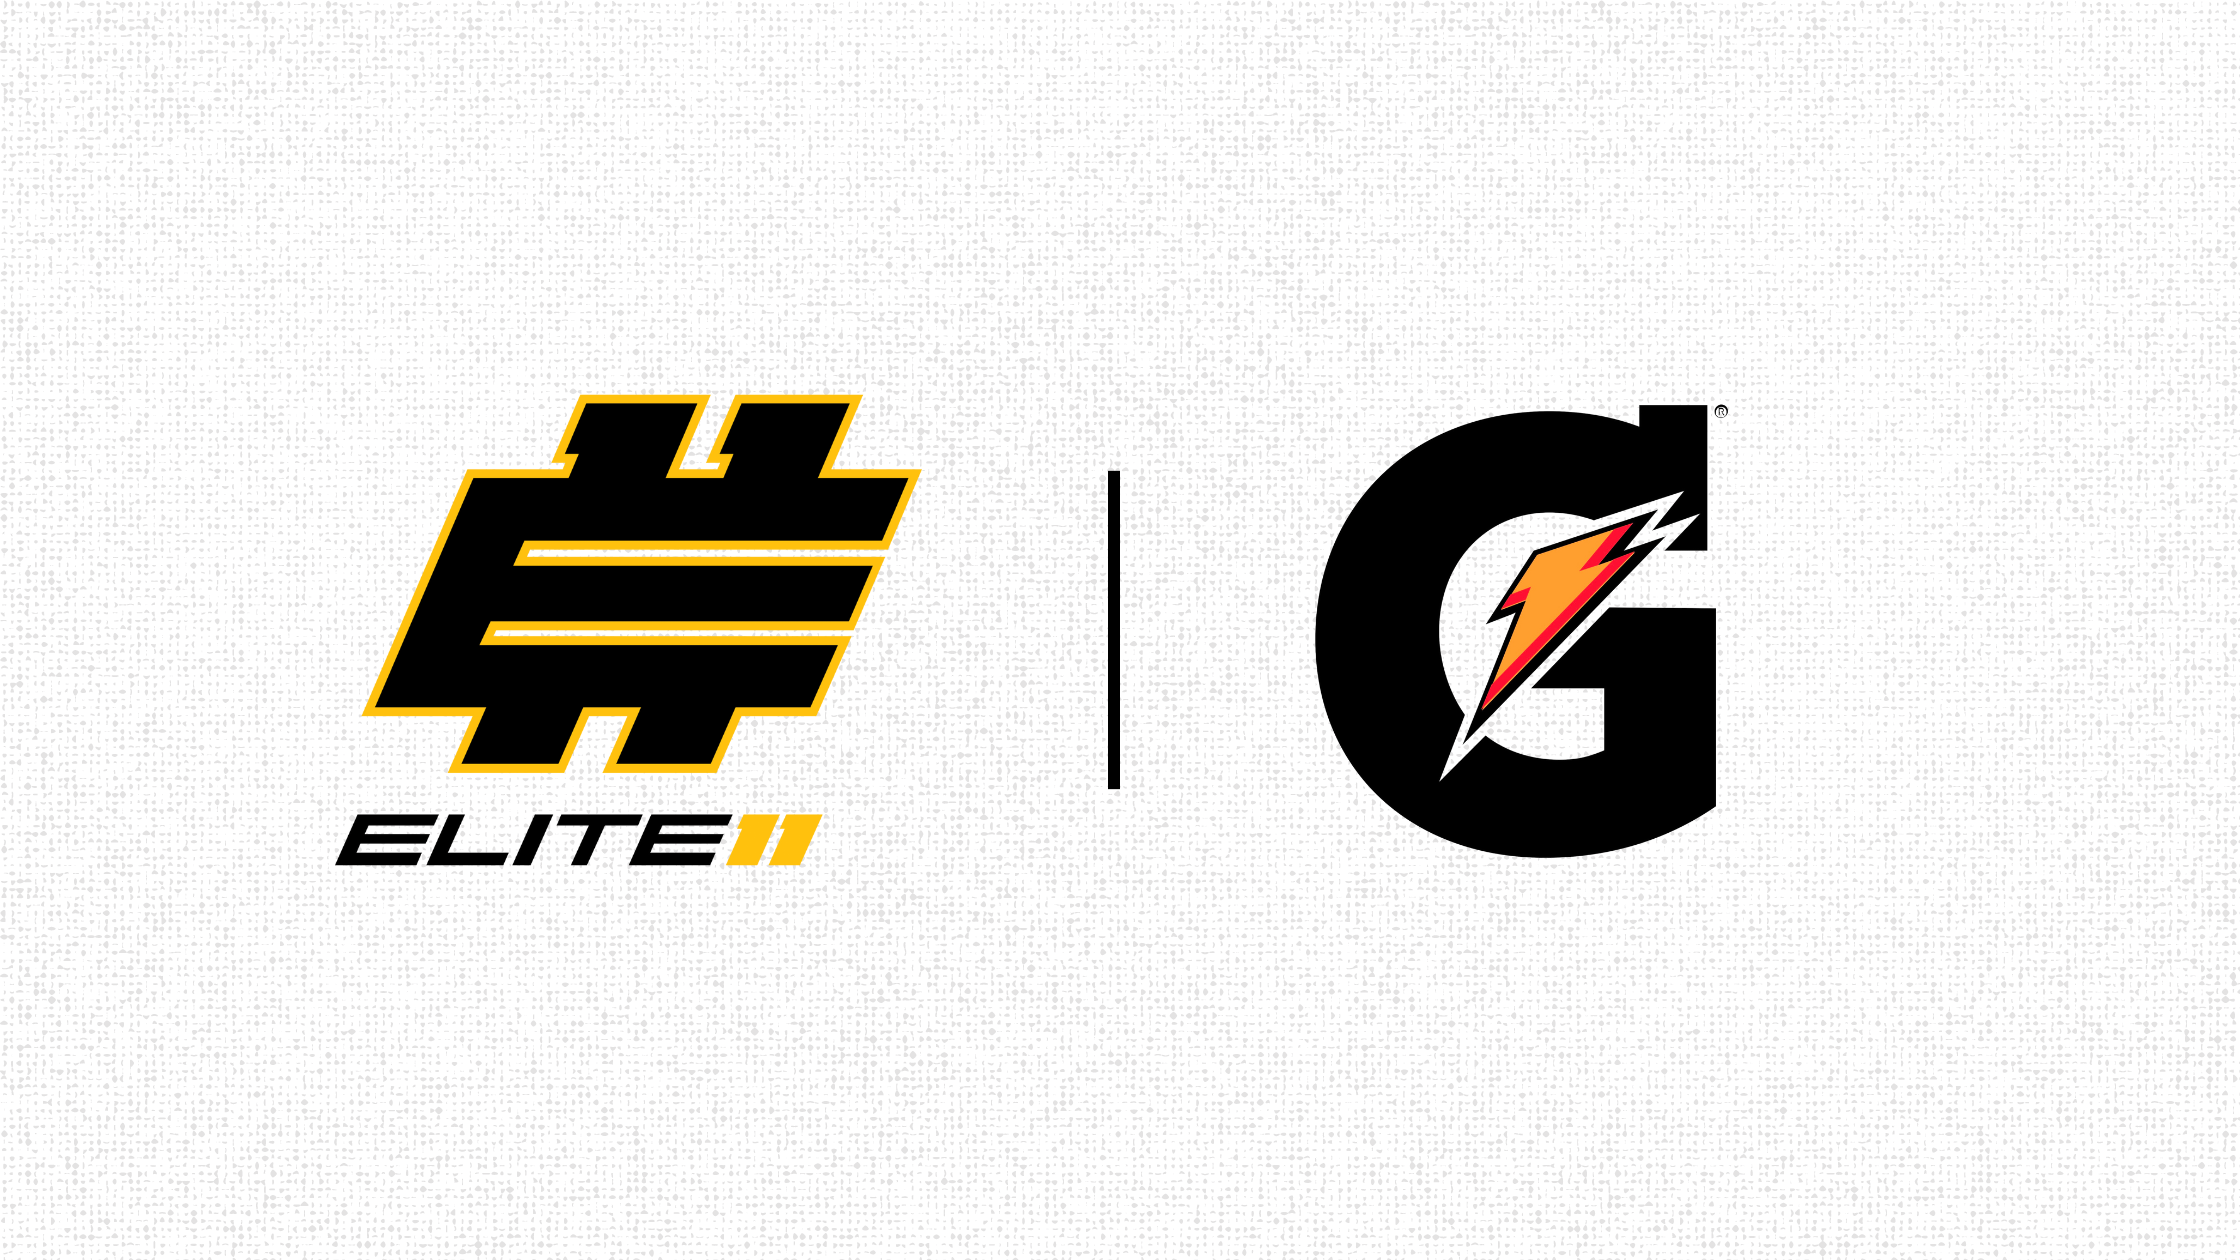 Elite 11 and Gatorade Partnership with logos